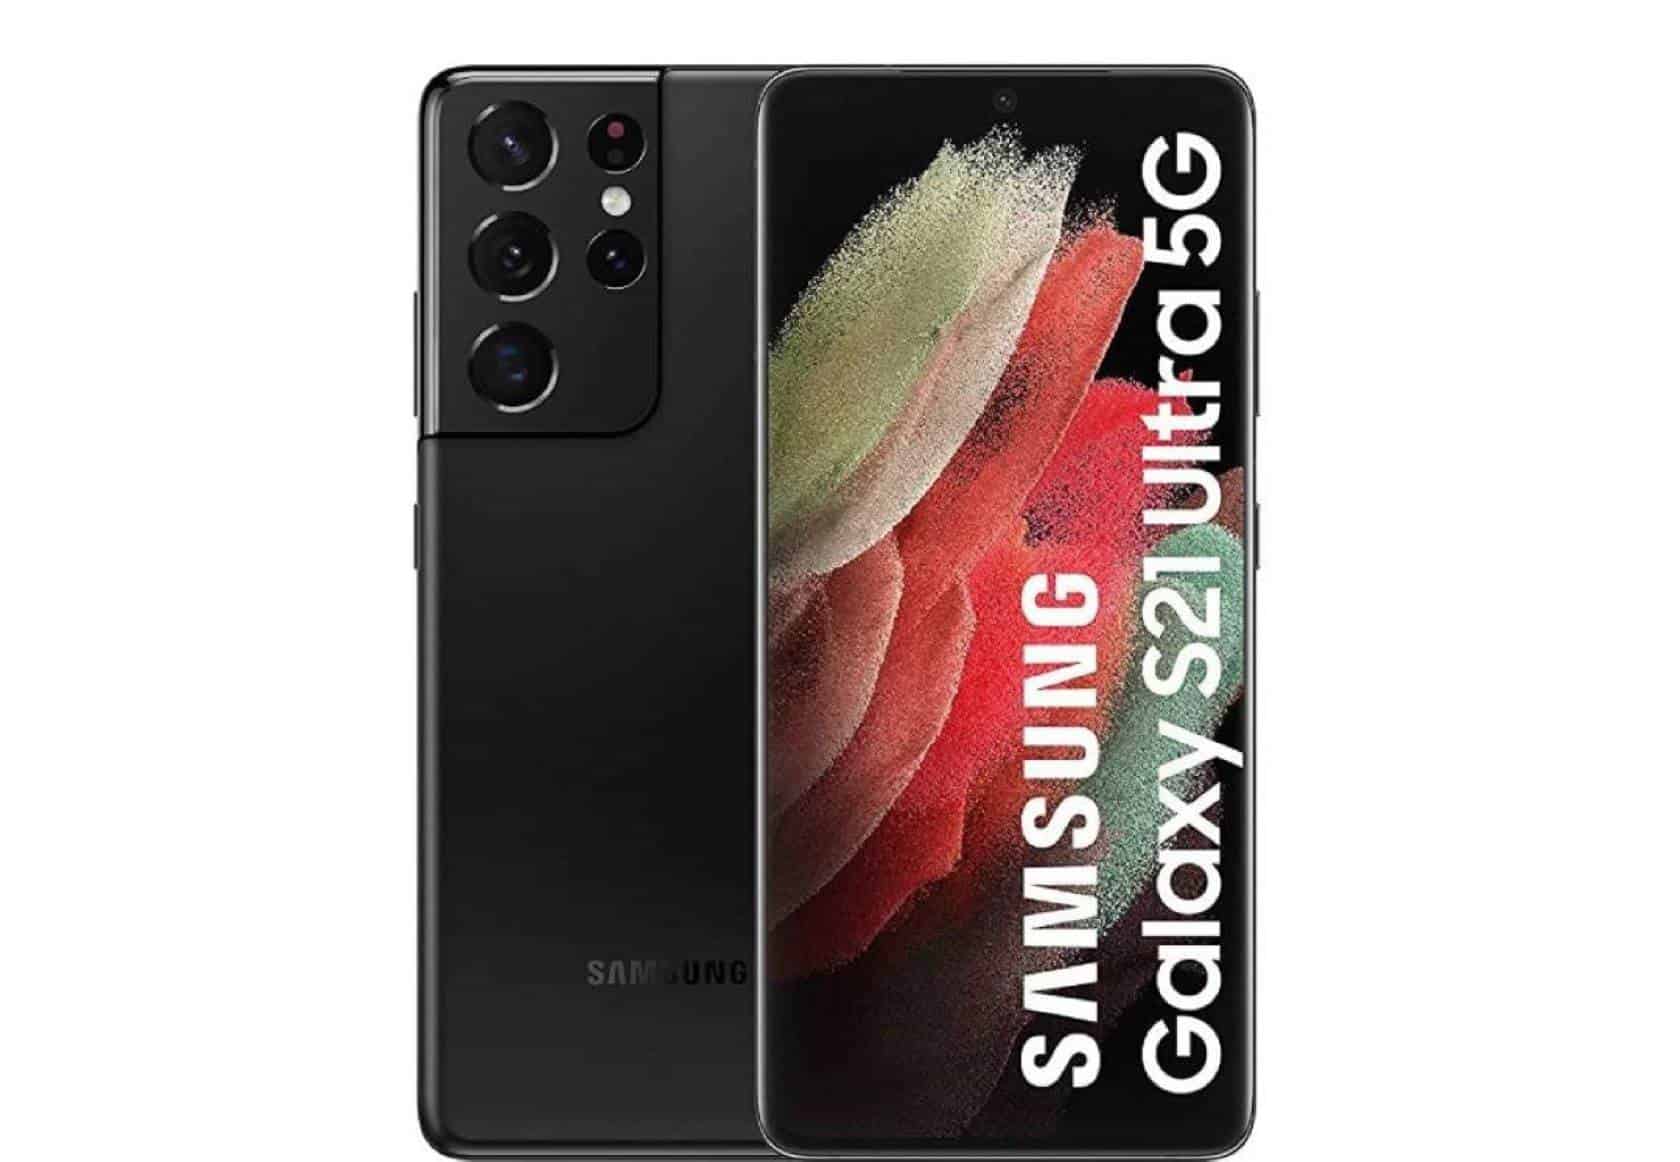 Smartphone Samsung Galaxy S21 Ultra características y gama